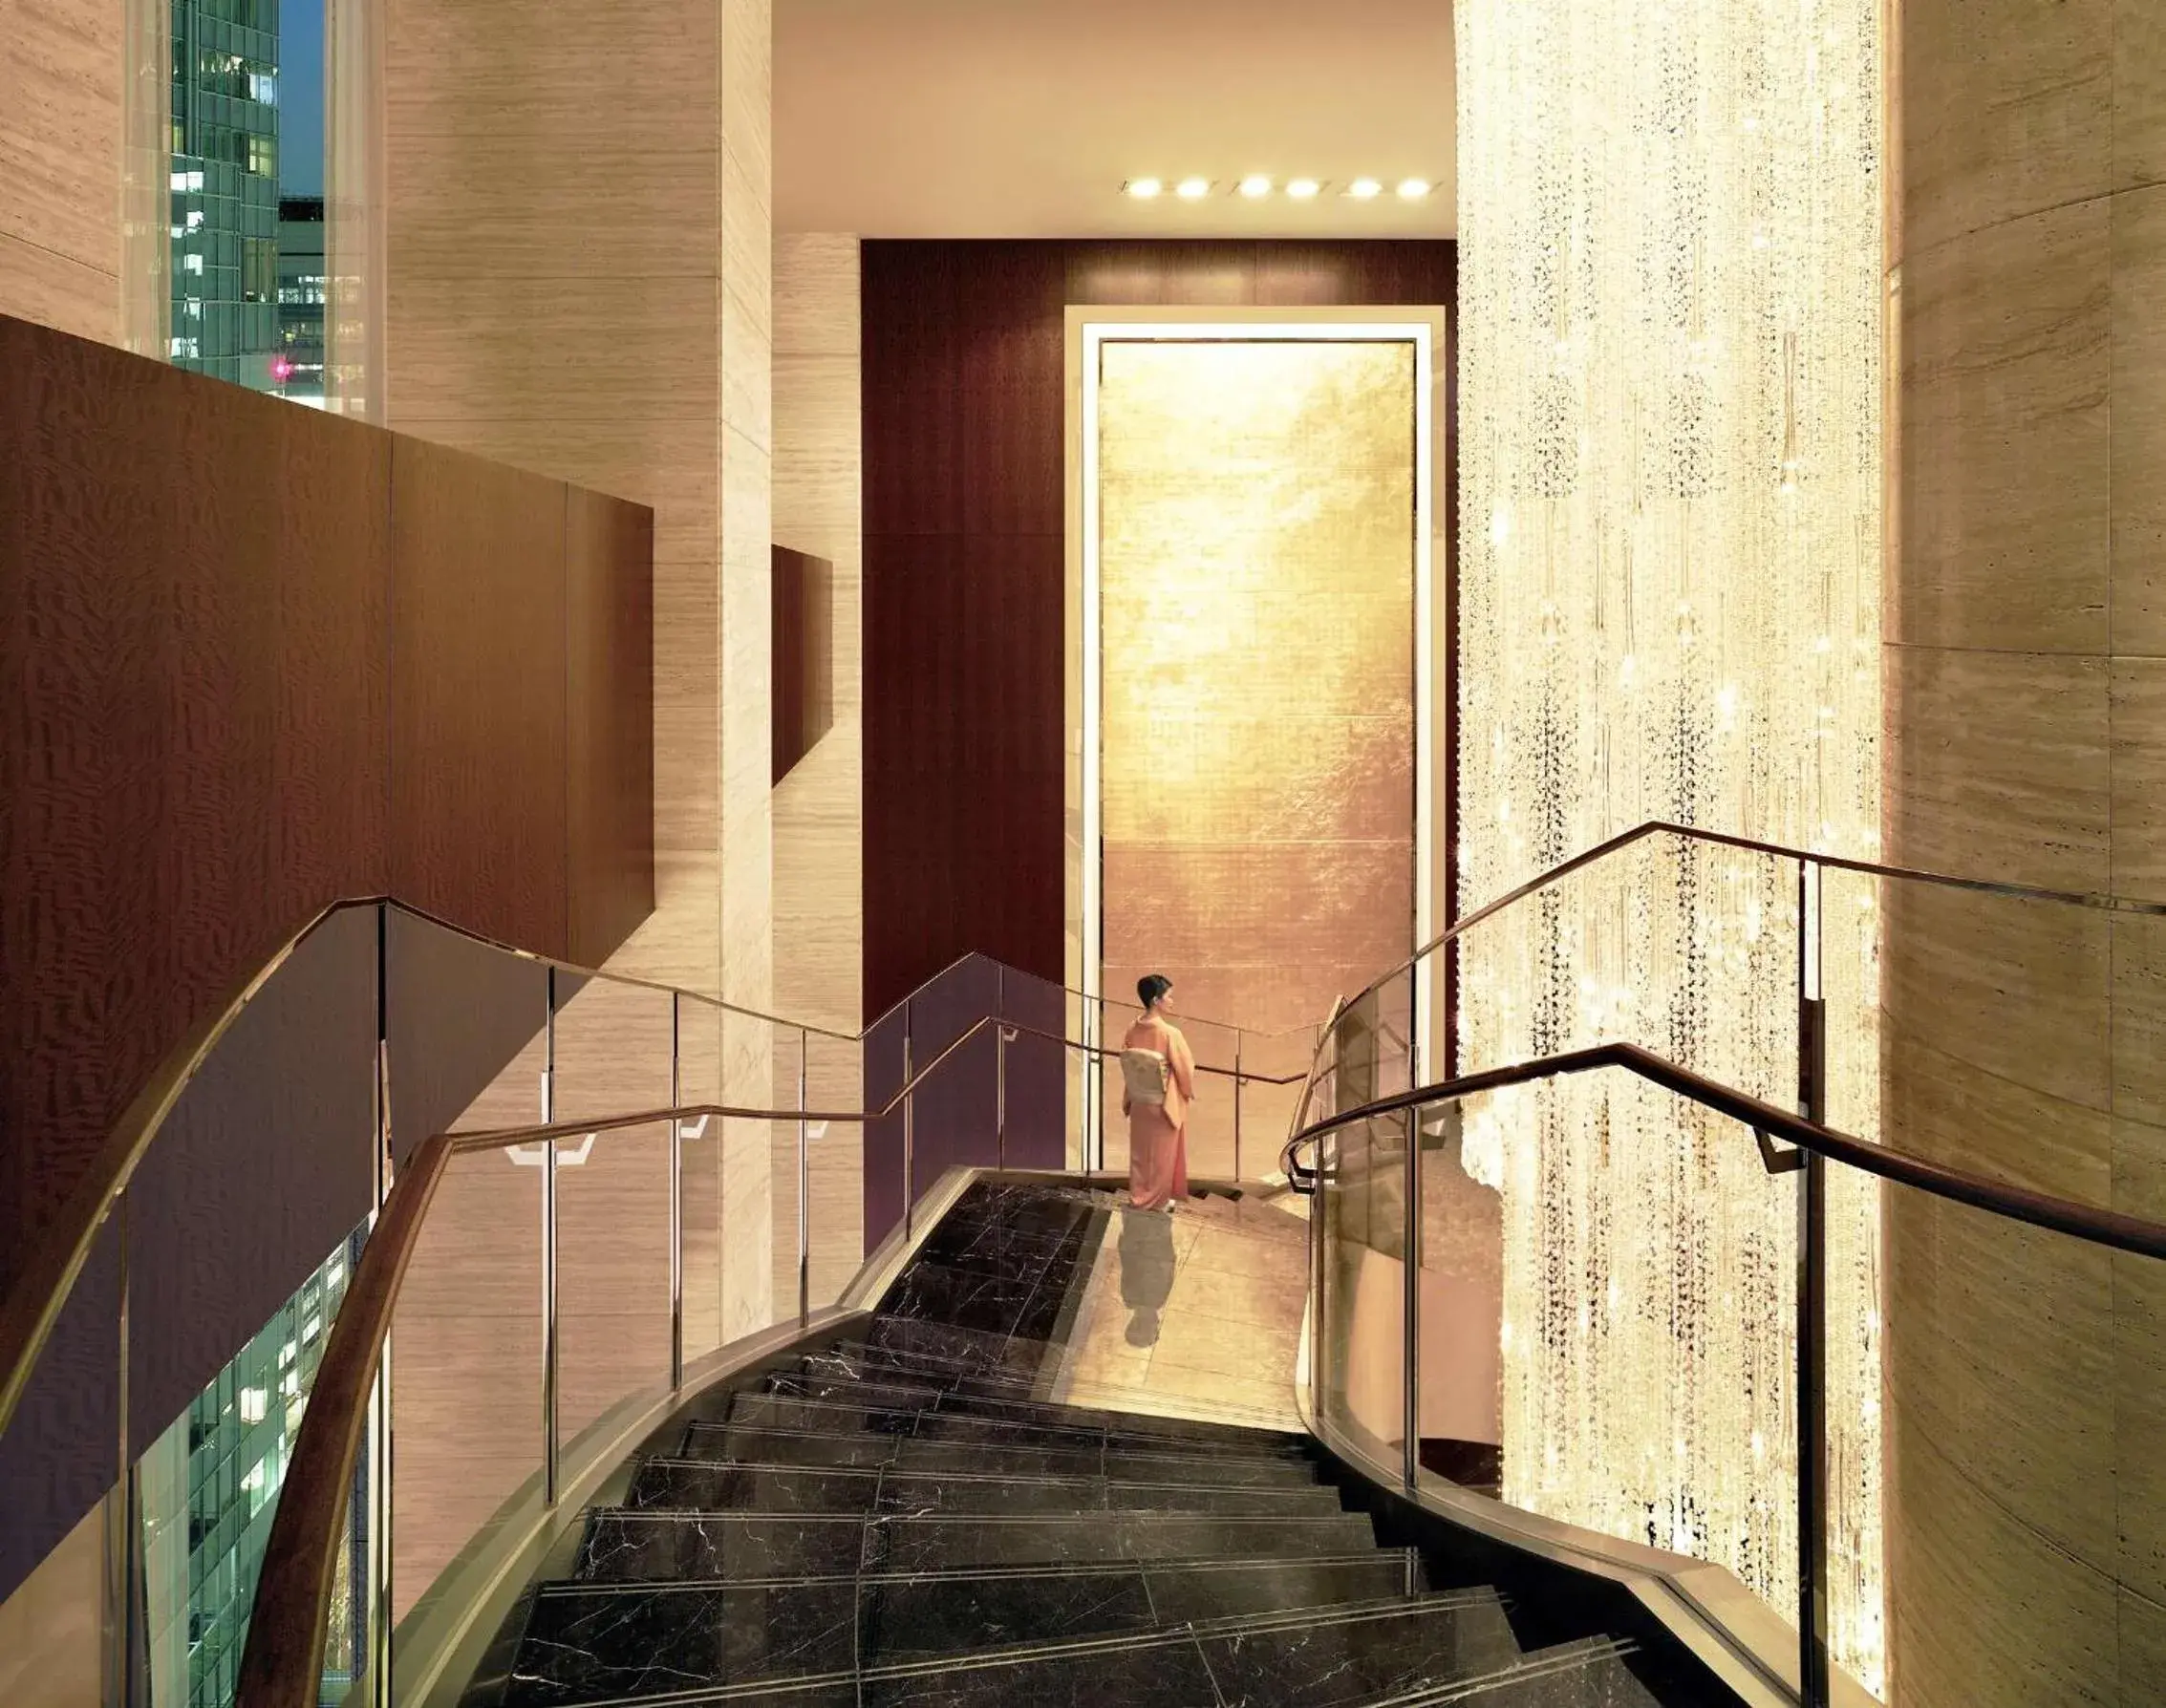 Lobby or reception in Shangri-La Tokyo